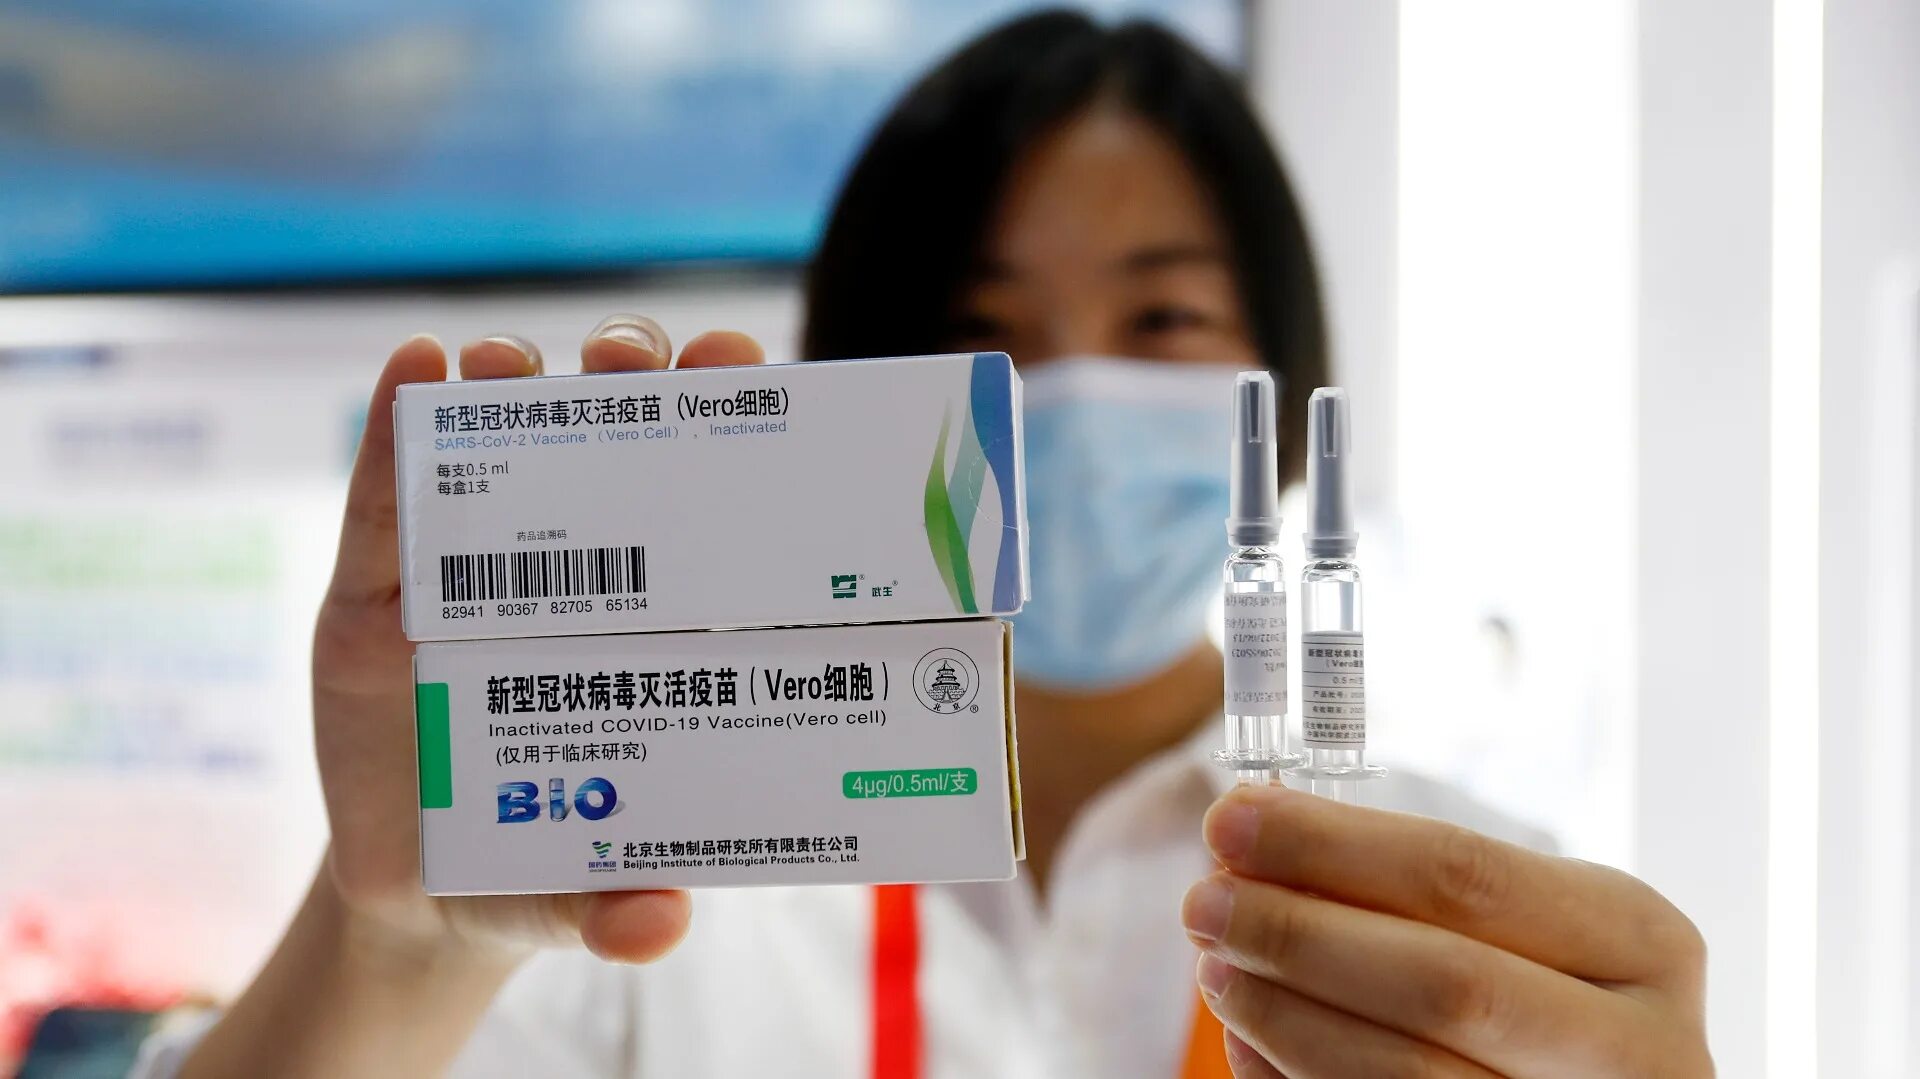 Covid-19 вакцина китайская. Вакцина Синофарм китайская. Vero Cell вакцина. Китайская вакцина от коронавируса. Вакцины китая